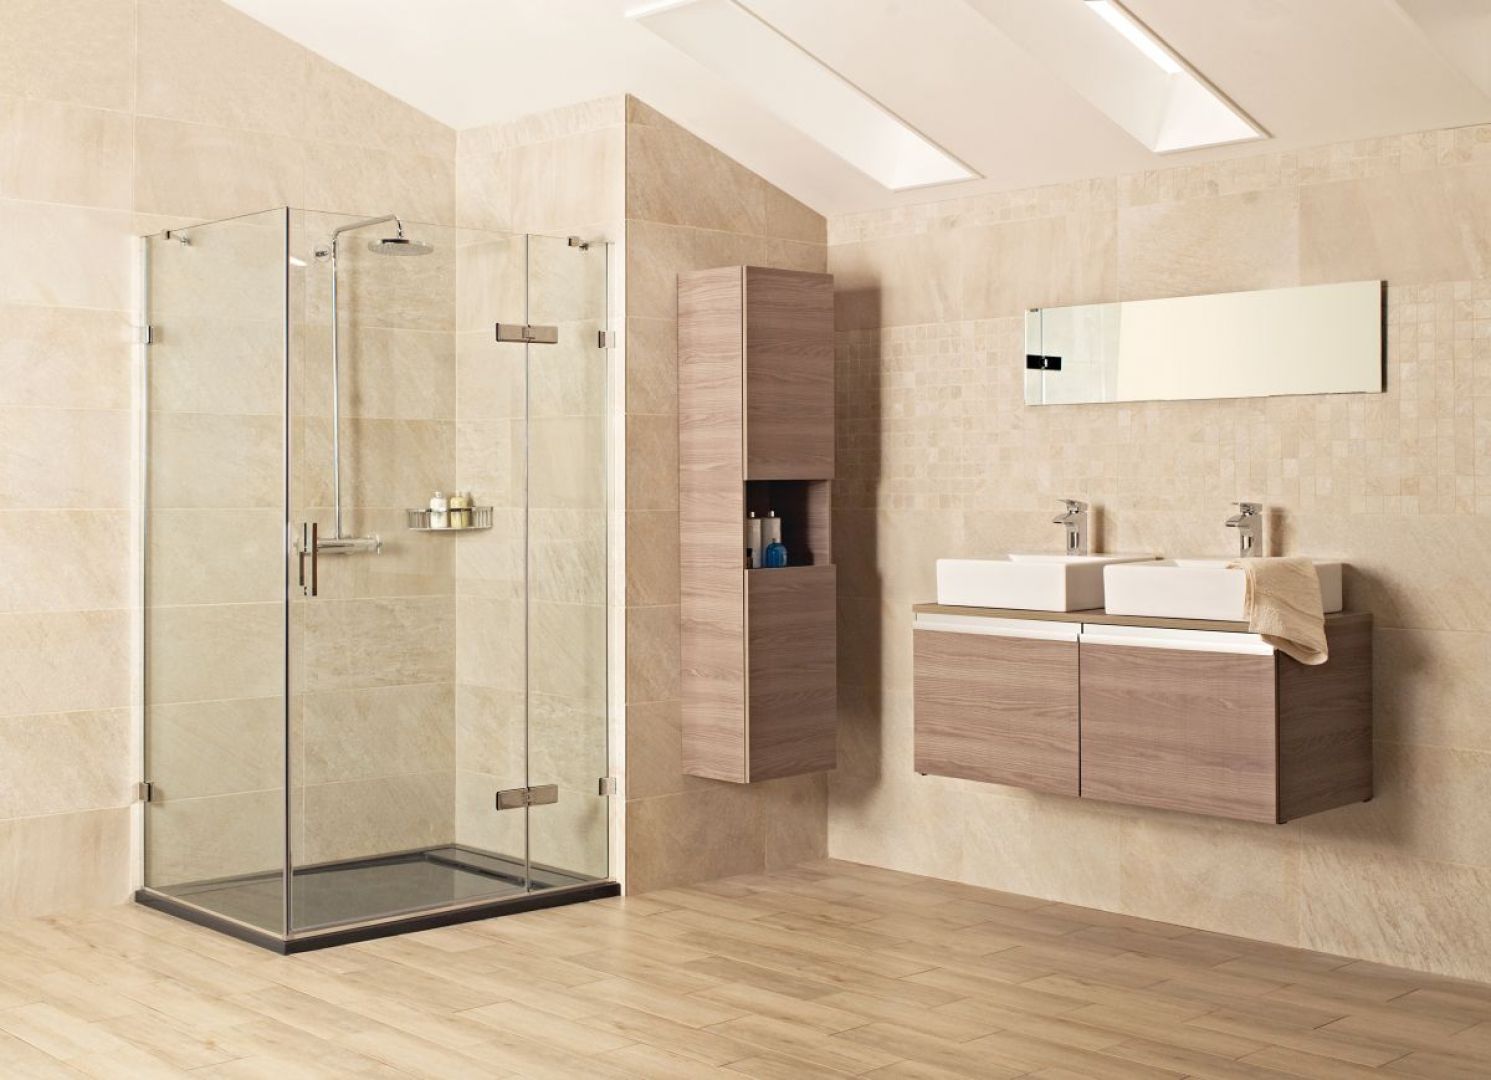 Roman Shower to czołowy producent kabin prysznicowych. Fot. Roman Showers Liber